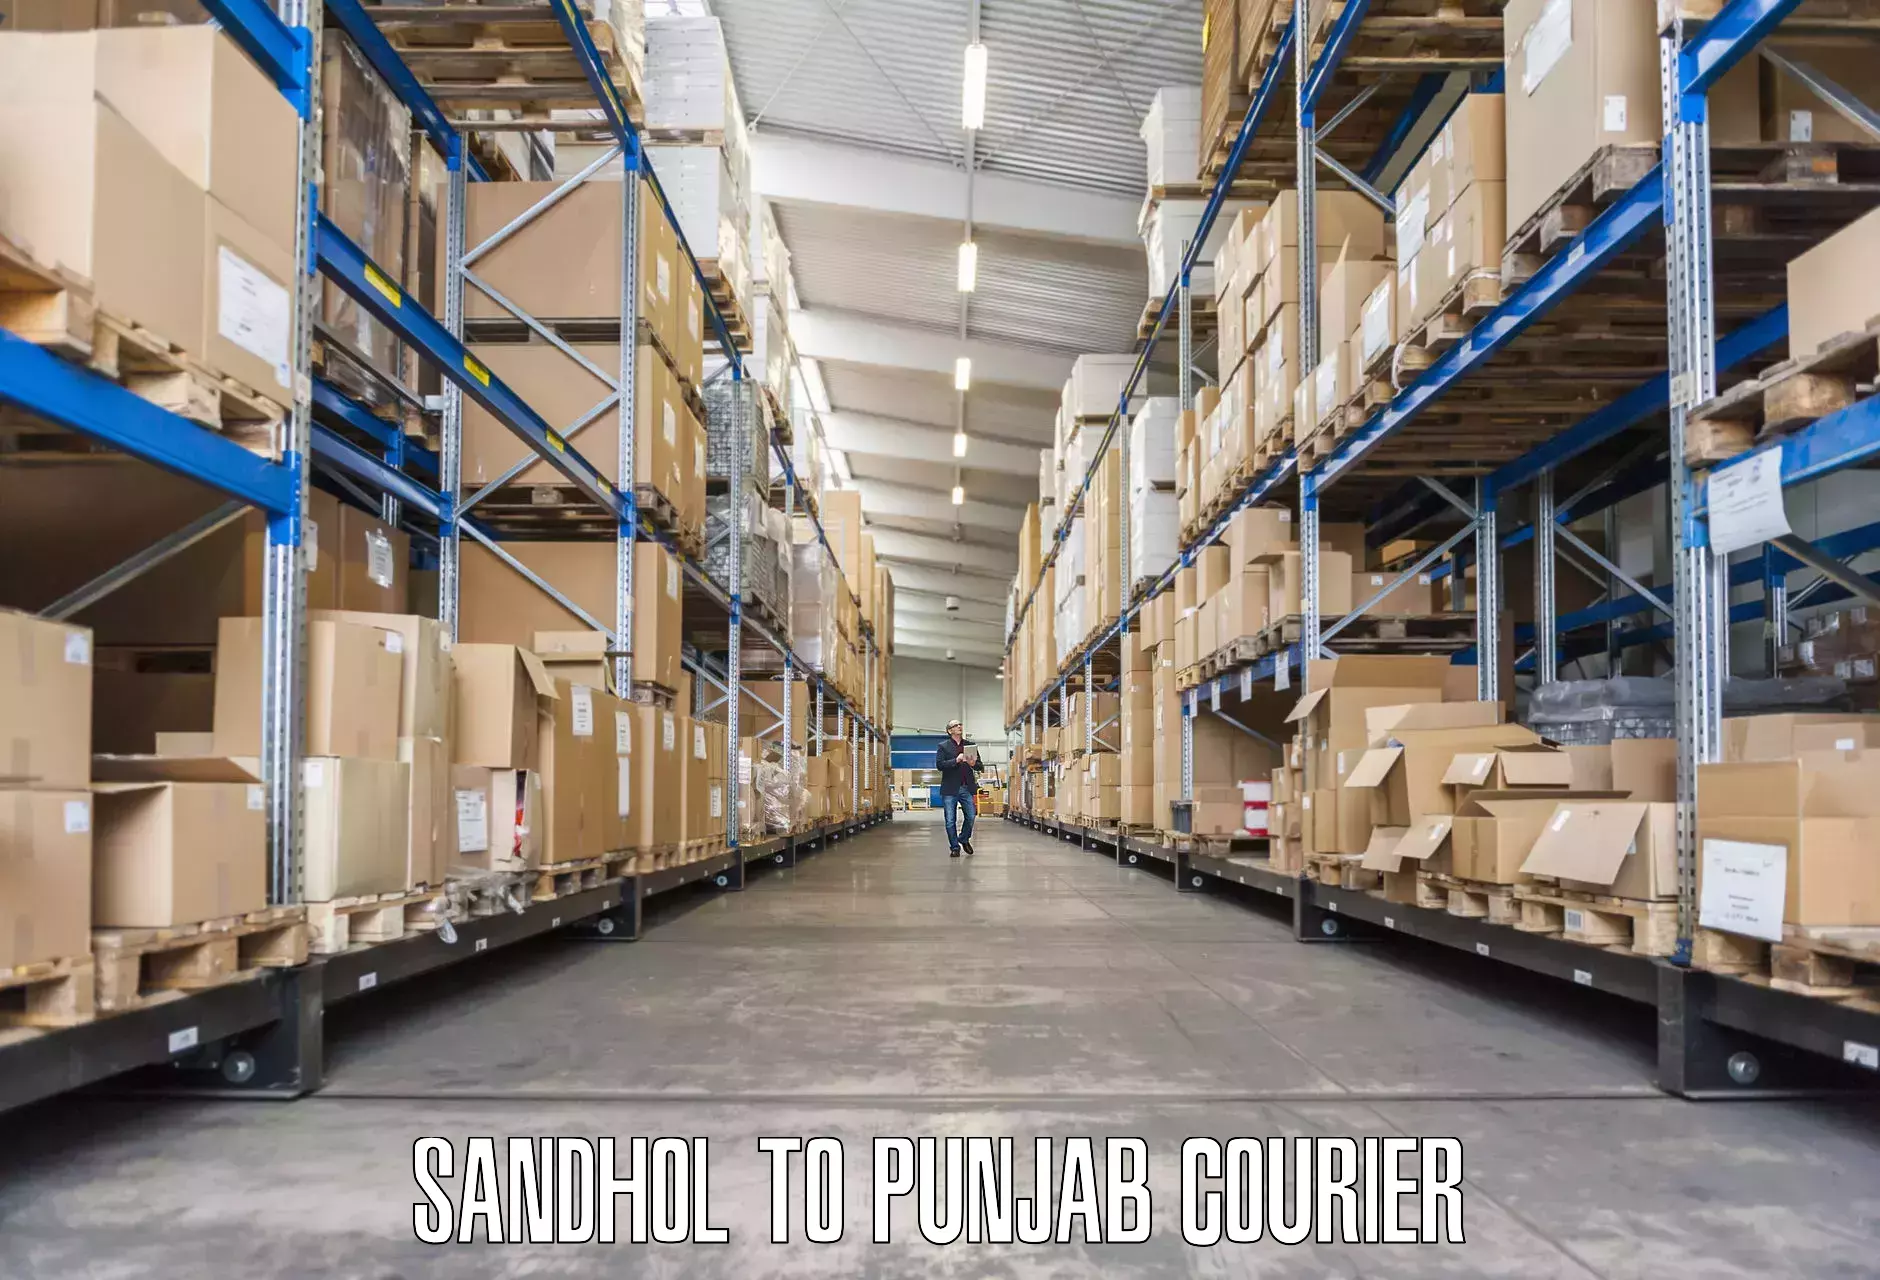 Furniture shipping services Sandhol to Punjab